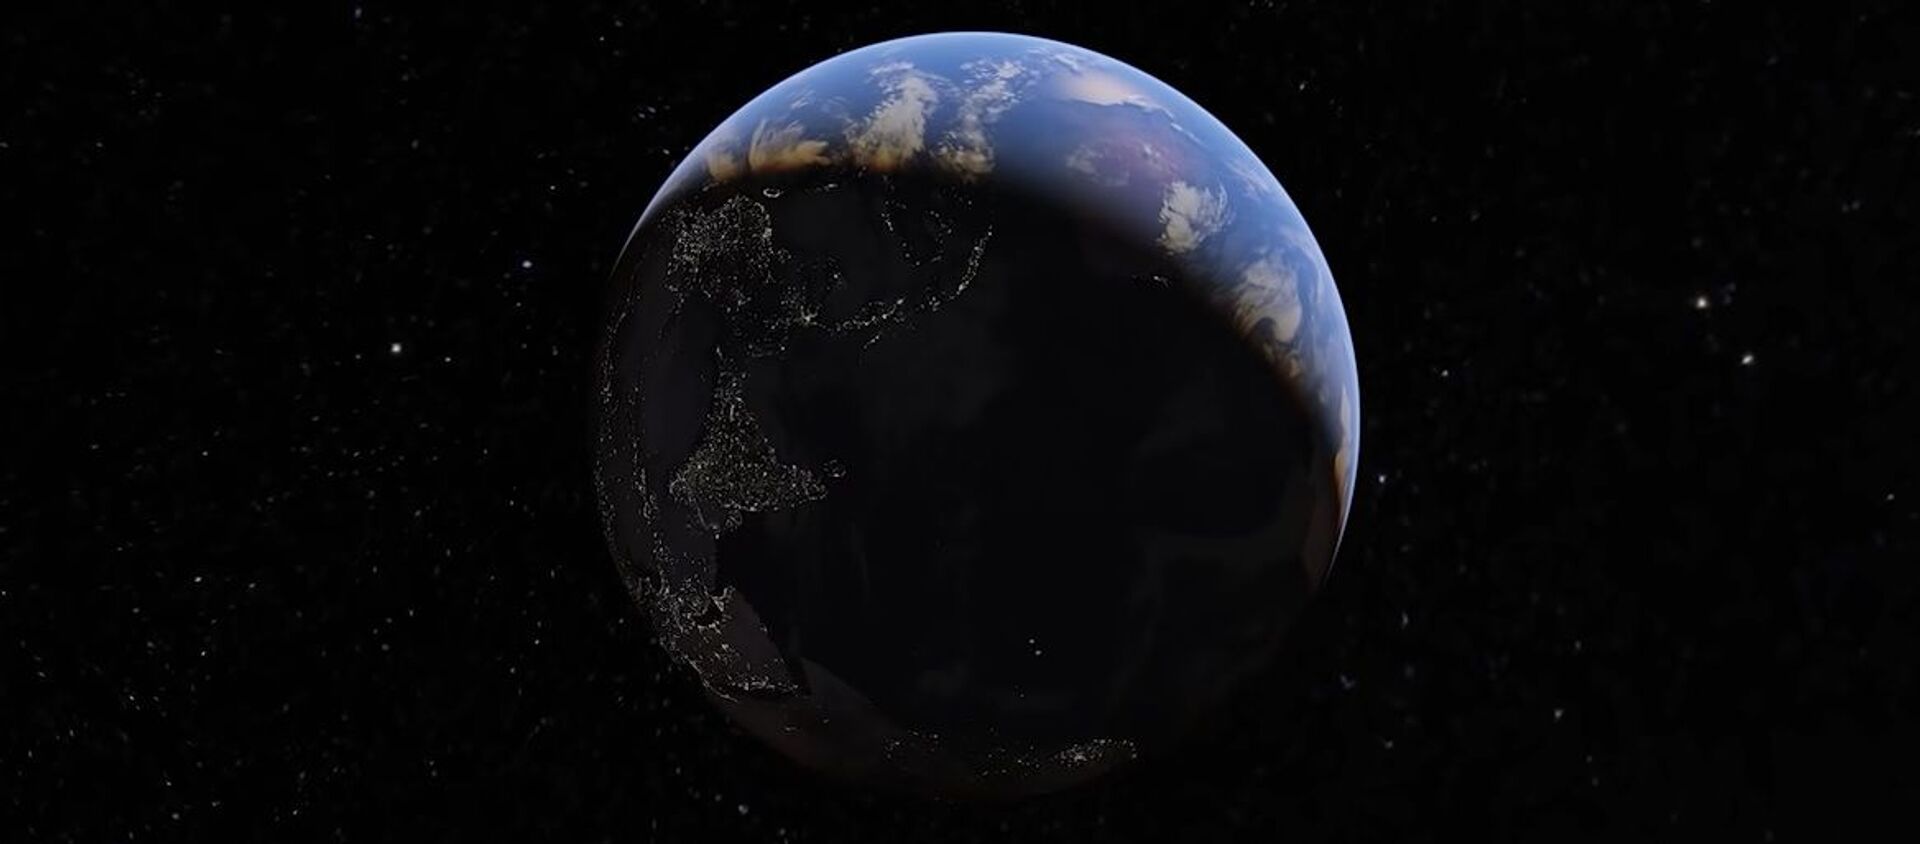 როგორ იცვლებოდა ჩვენი პლანეტა 1984 წლიდან დღემდე - ვიდეო - Sputnik საქართველო, 1920, 17.04.2021